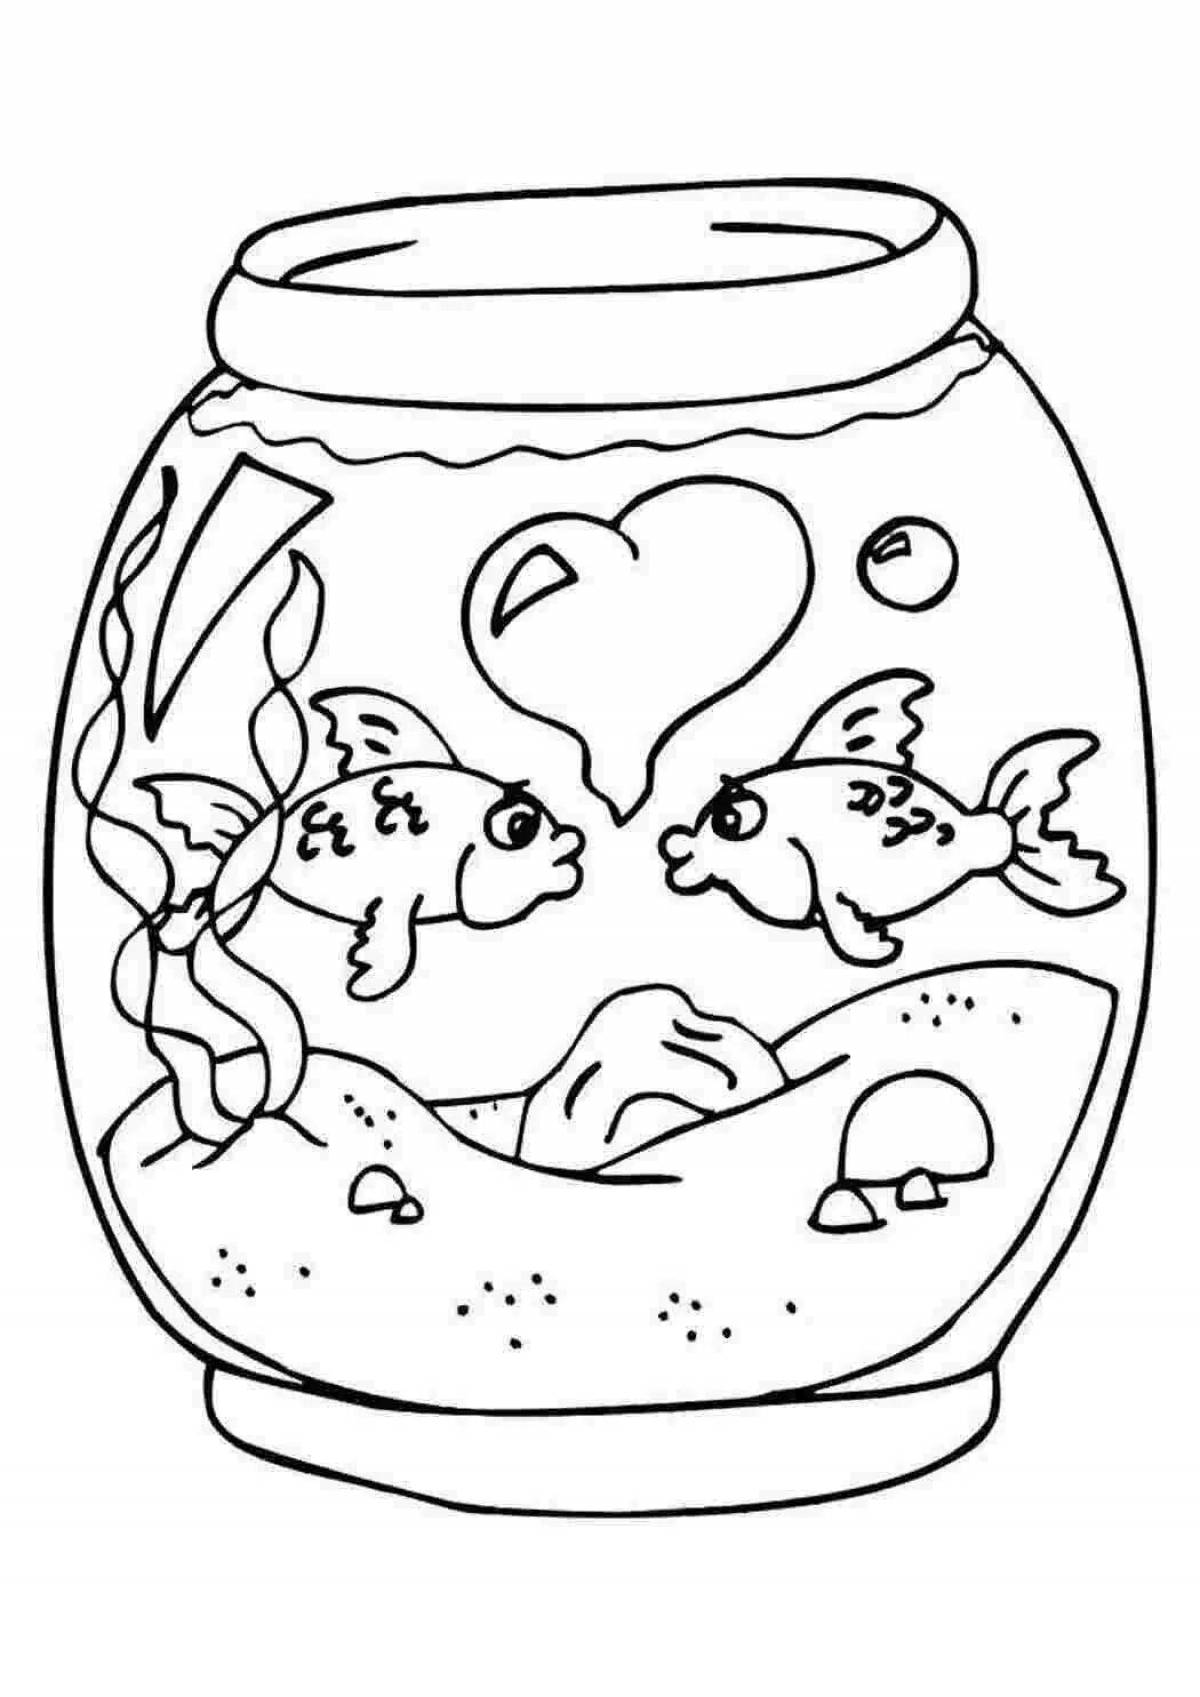 Fish in aquarium #5